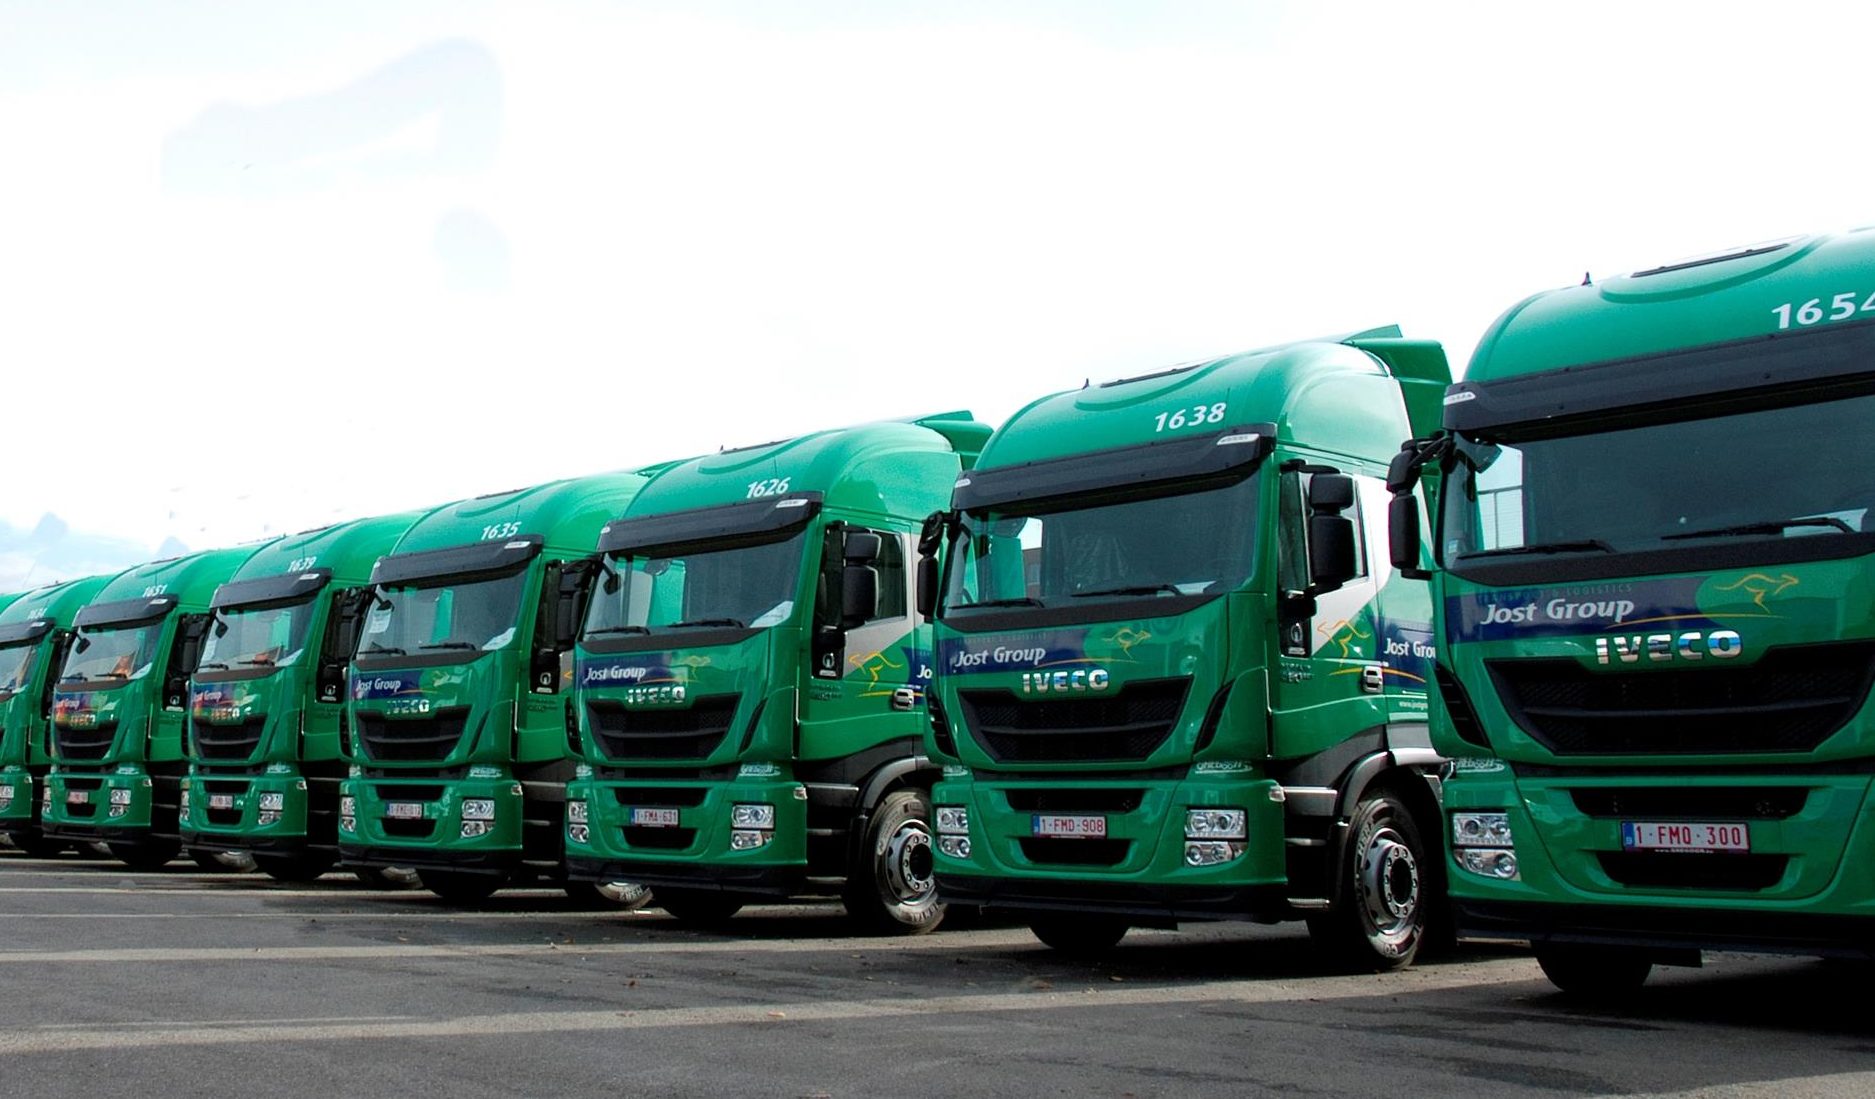 Jost Group orders 500 Iveco lorries on gas